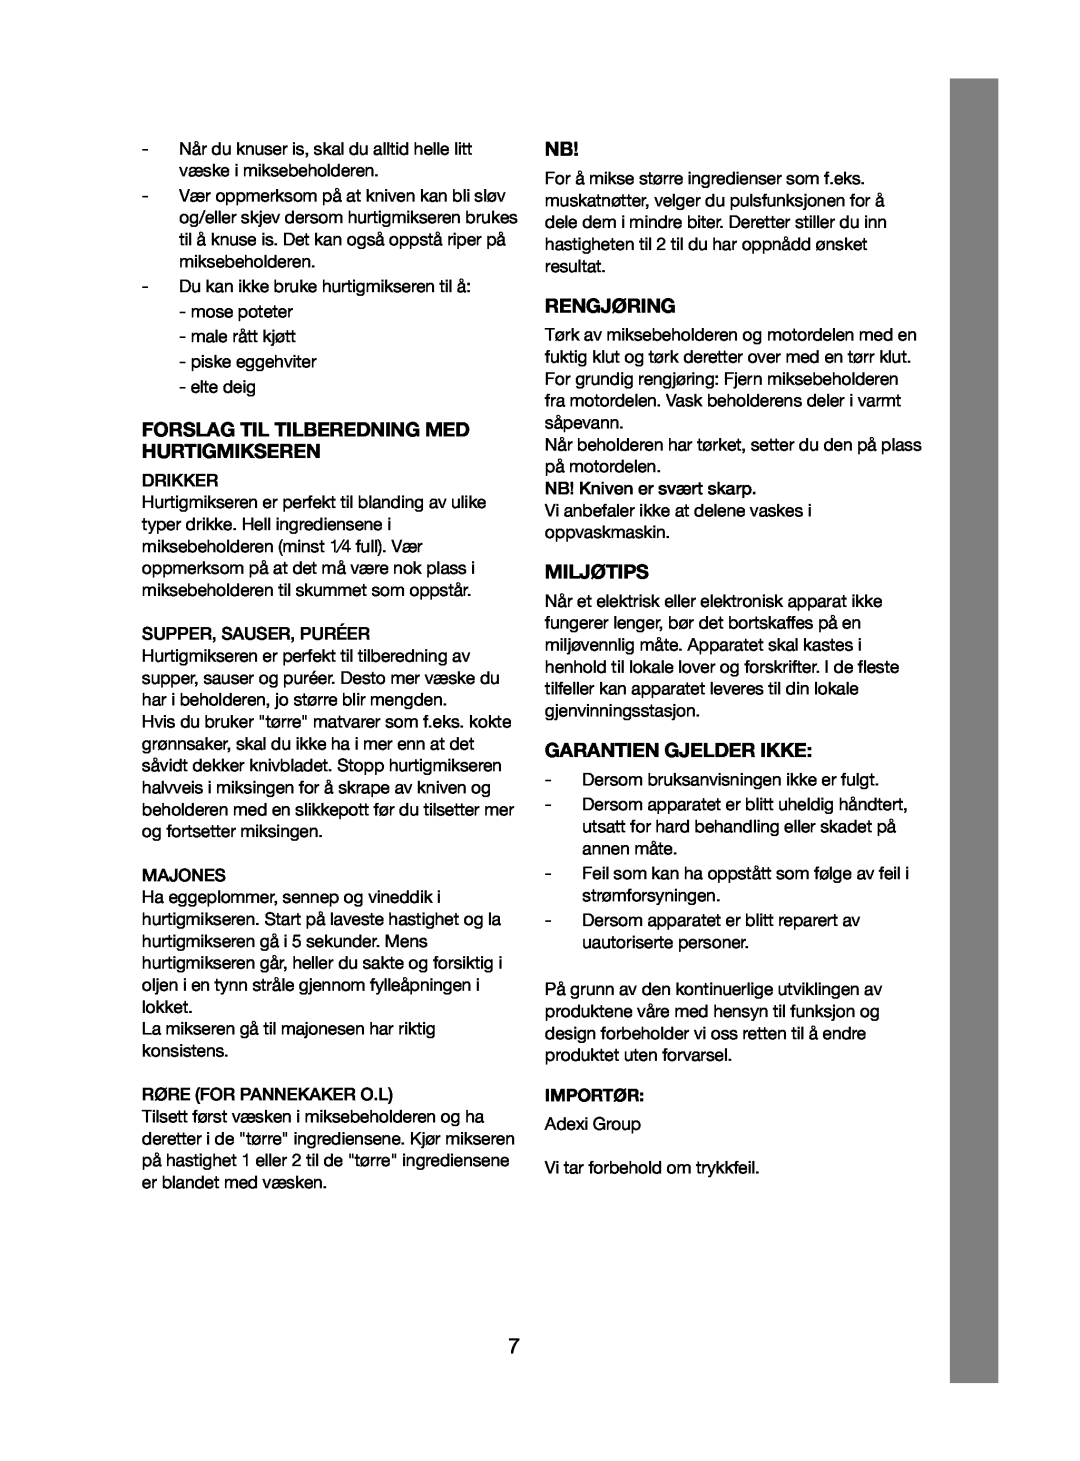 Melissa 246-013 manual Forslag Til Tilberedning Med Hurtigmikseren, Rengjøring, Miljøtips, Garantien Gjelder Ikke 